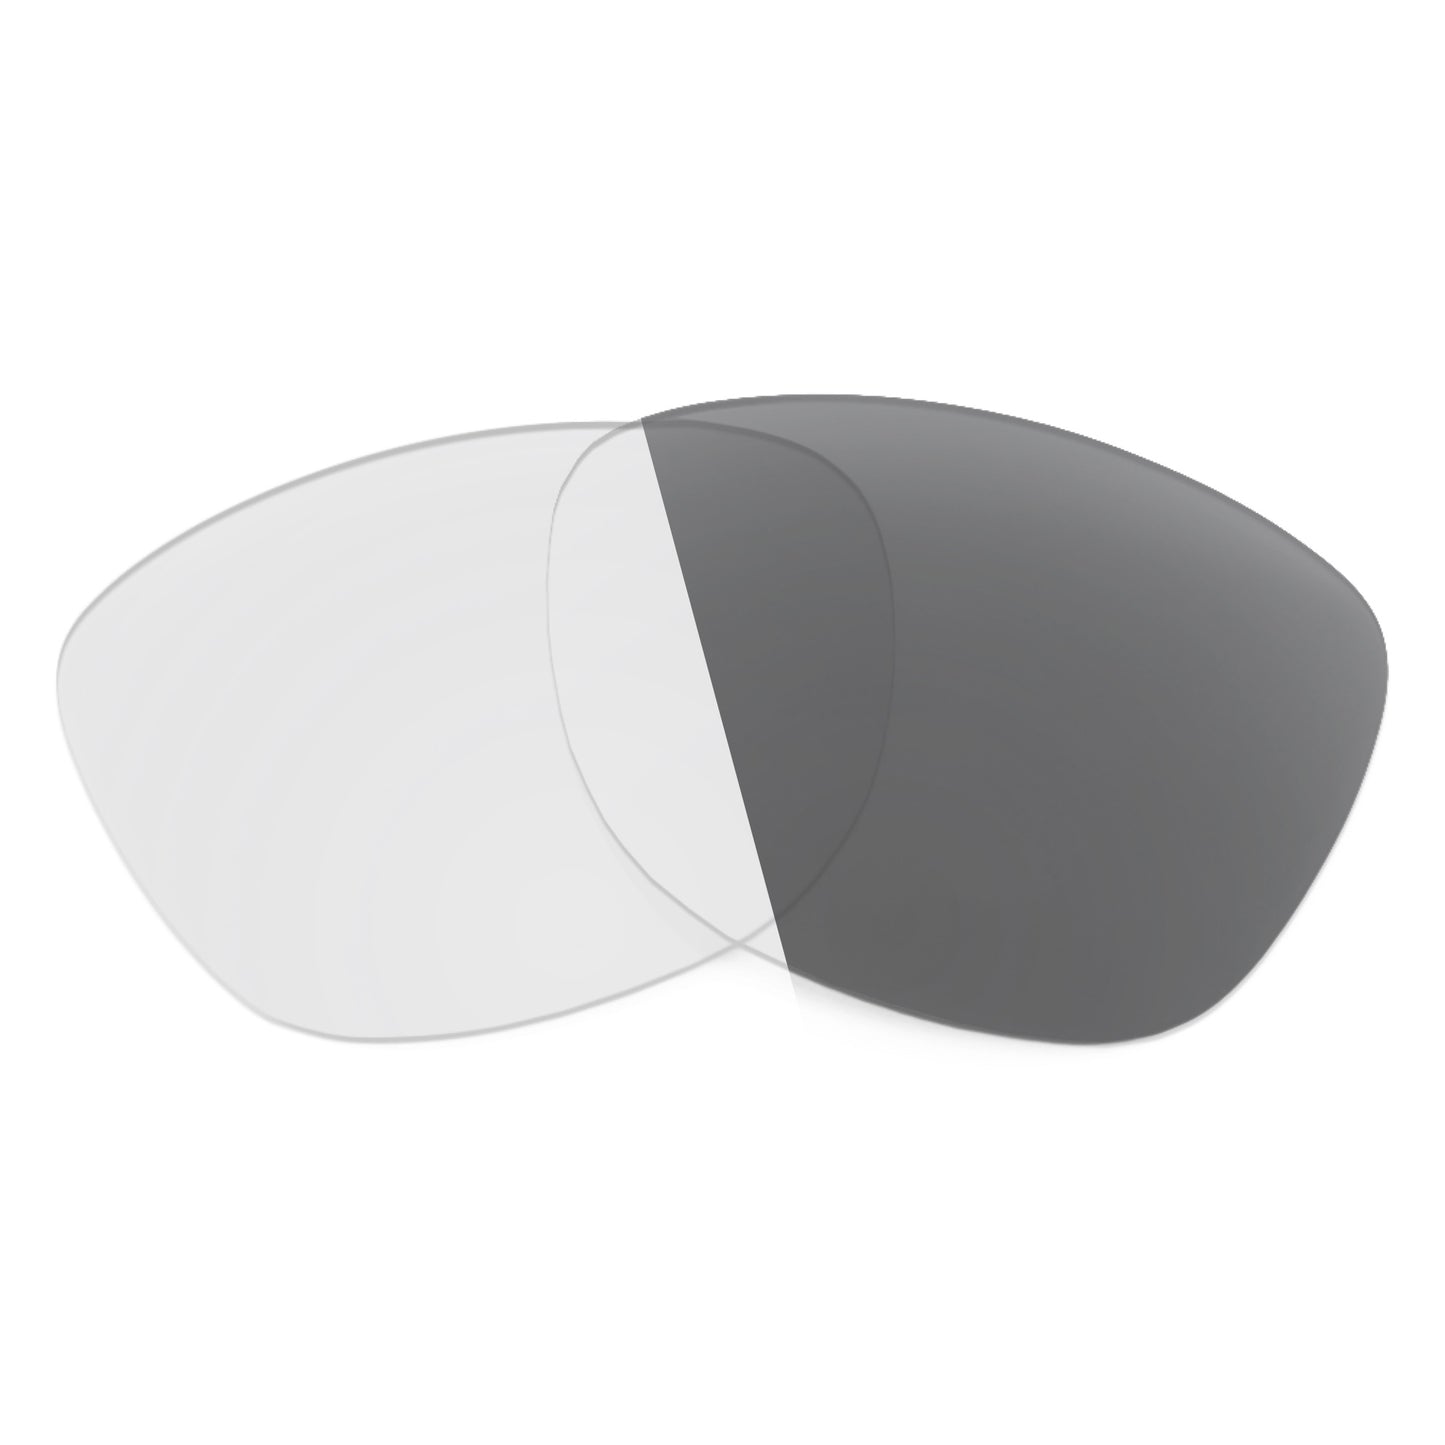 Revant replacement lenses for Oakley Splash Non-Polarized Adapt Gray Photochromic